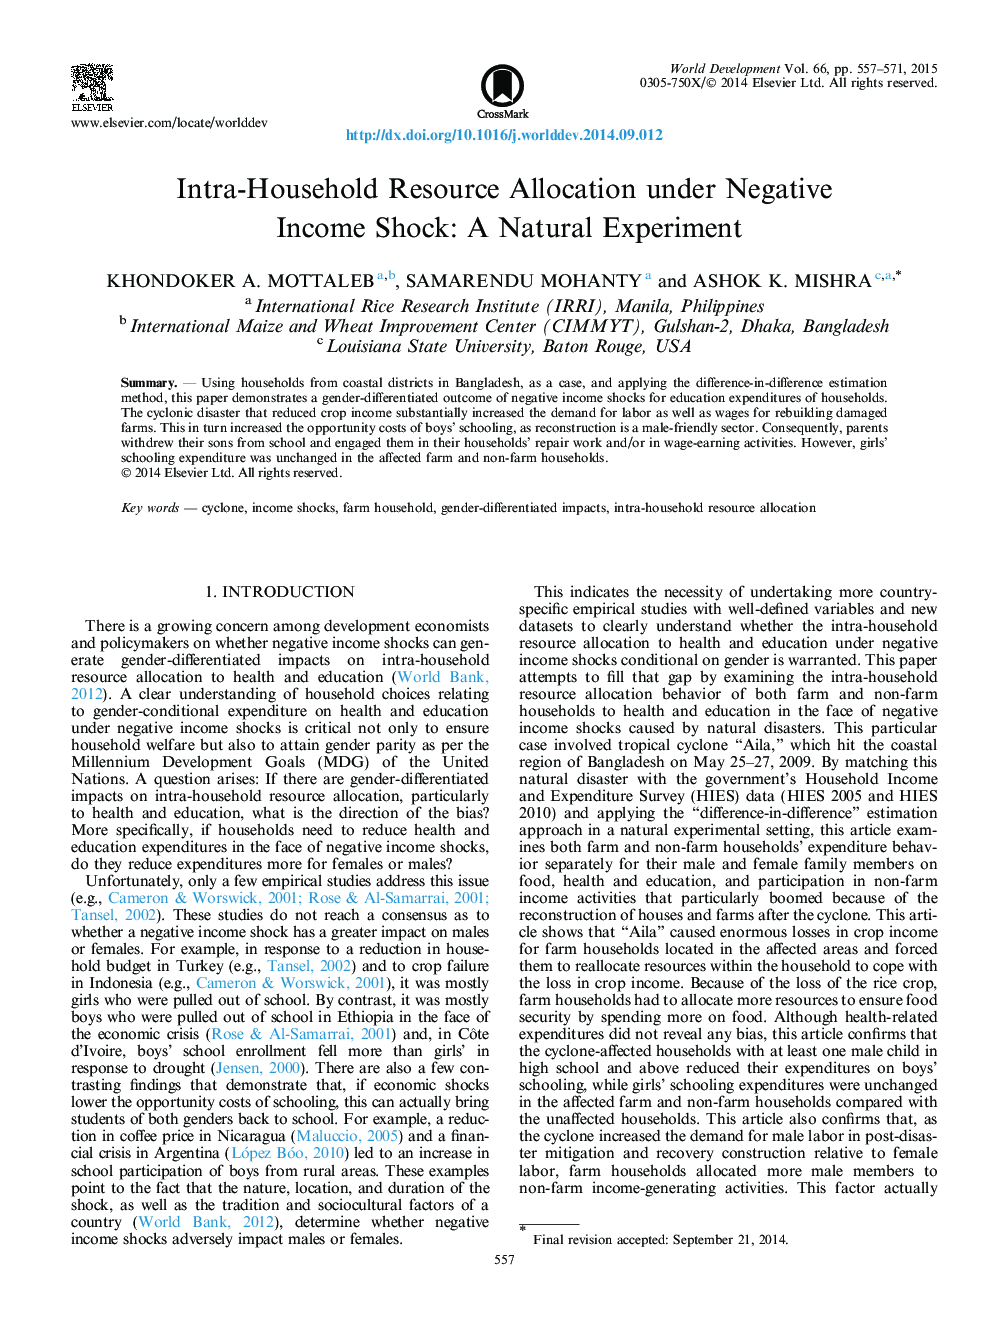 اختصاص منابع داخلی درونی تحت ضربه درآمد منفی: آزمایش طبیعی 